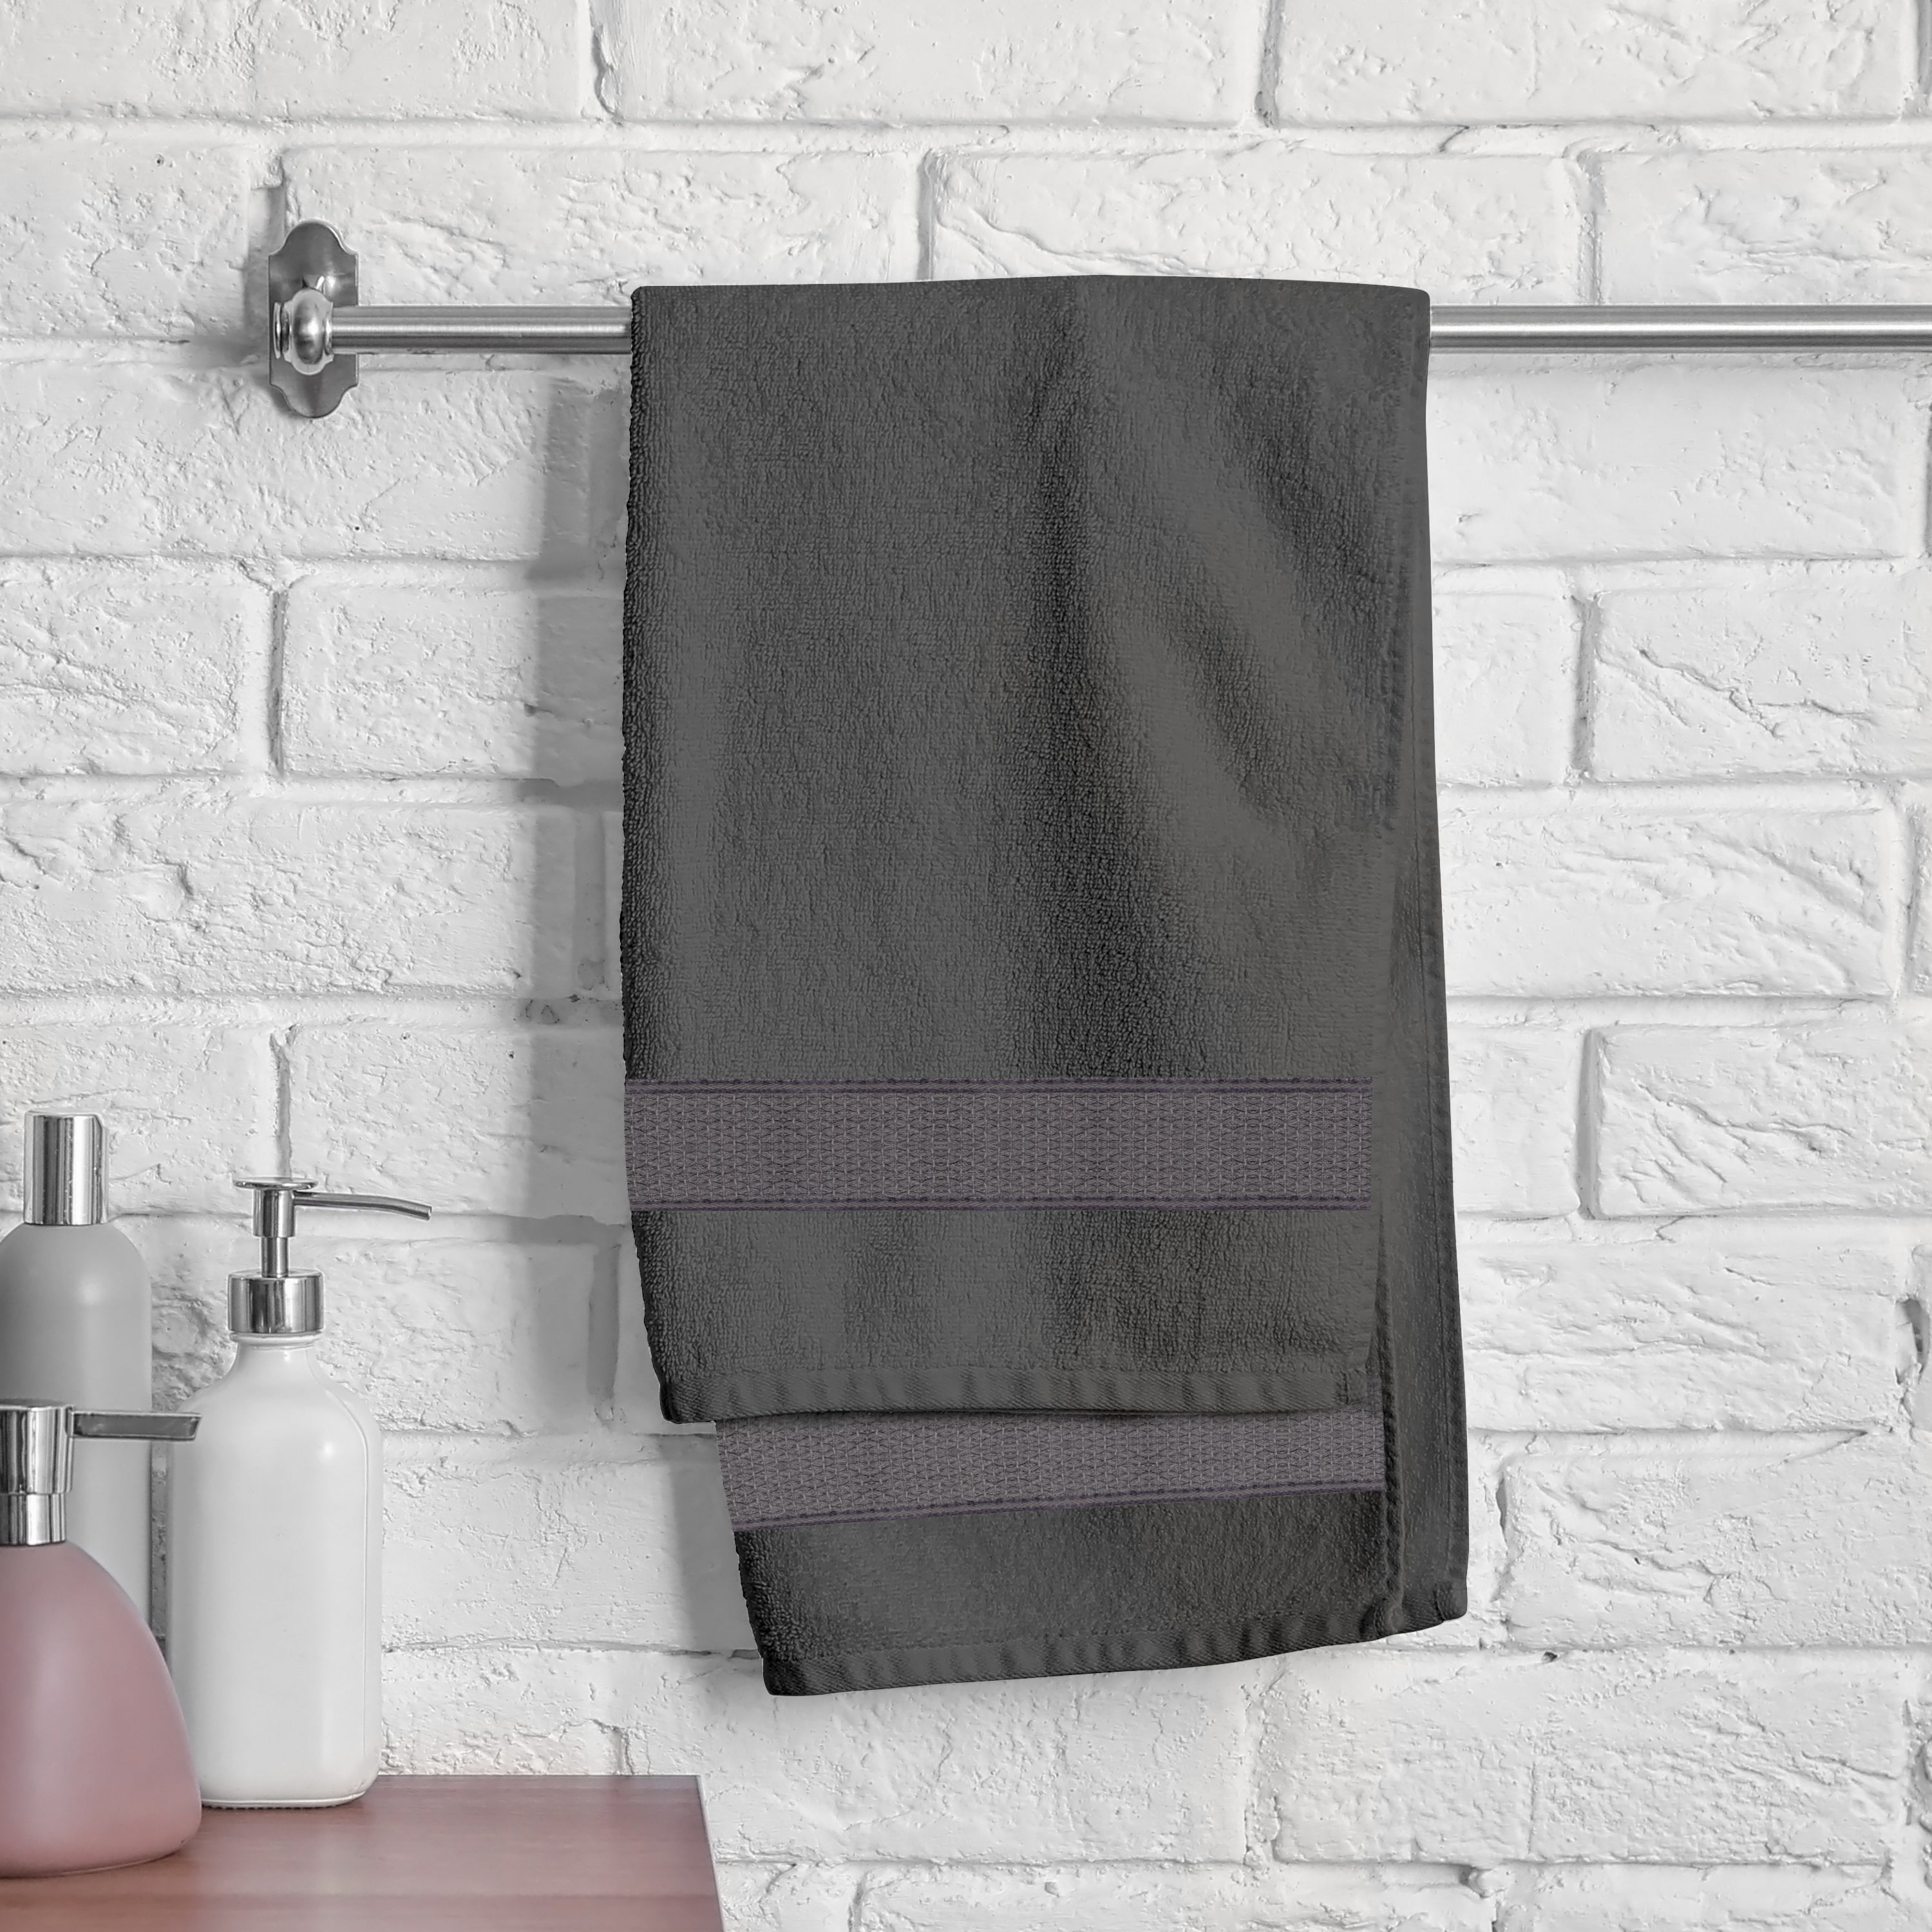 Aquacado 38 x 58 cm Hand Towel Set Of 4 Charcoal Grey & Turq Blue